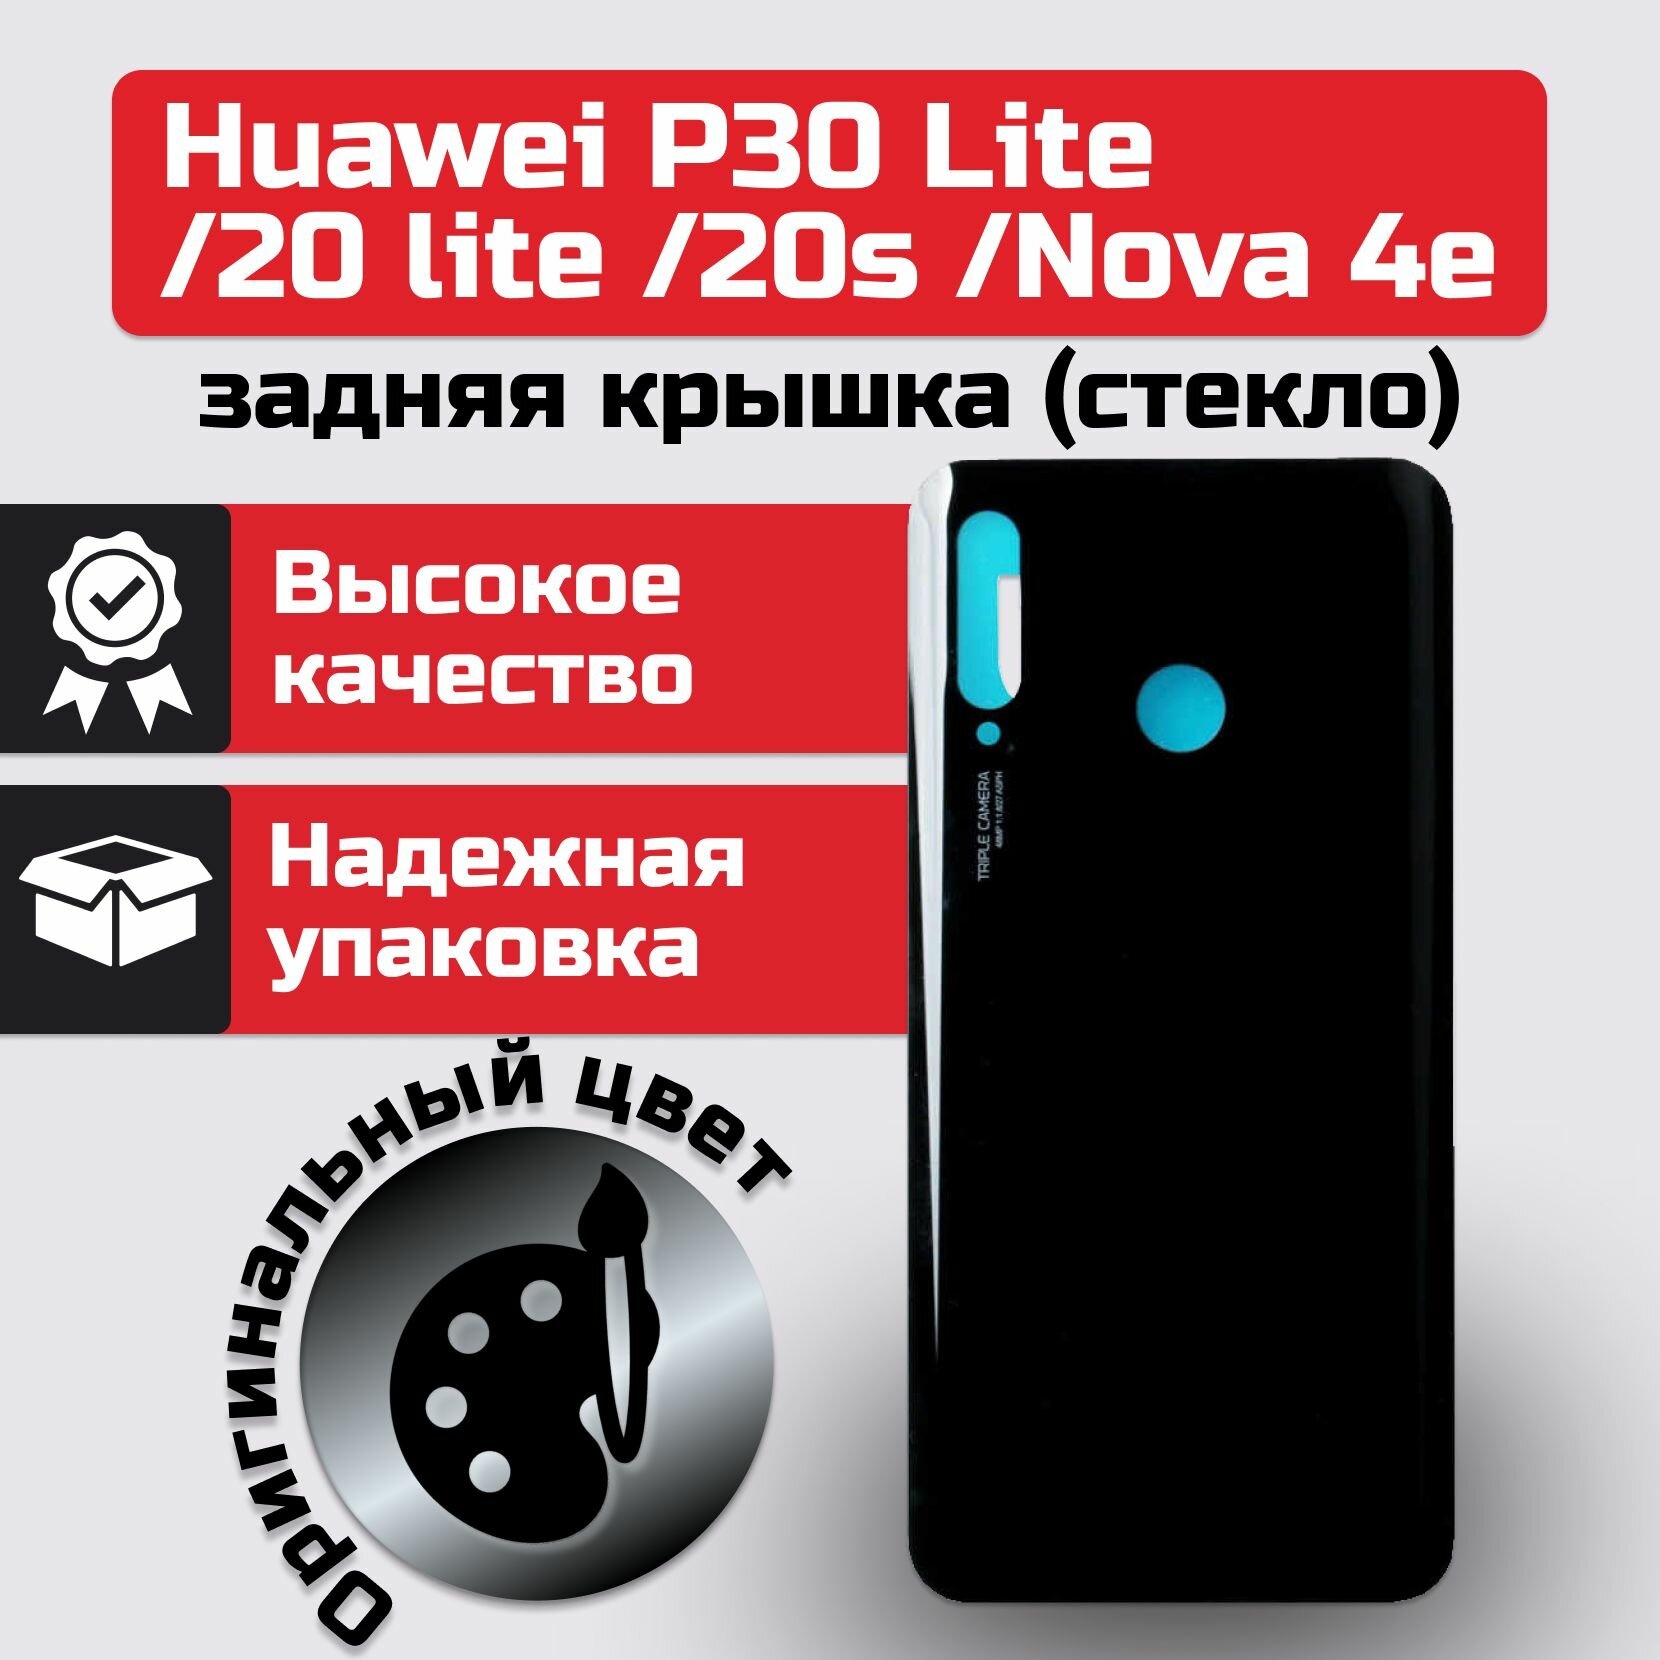 Задняя крышка для Huawei P30 Lite/ 20 Lite/ 20s/ Nova 4e Черный